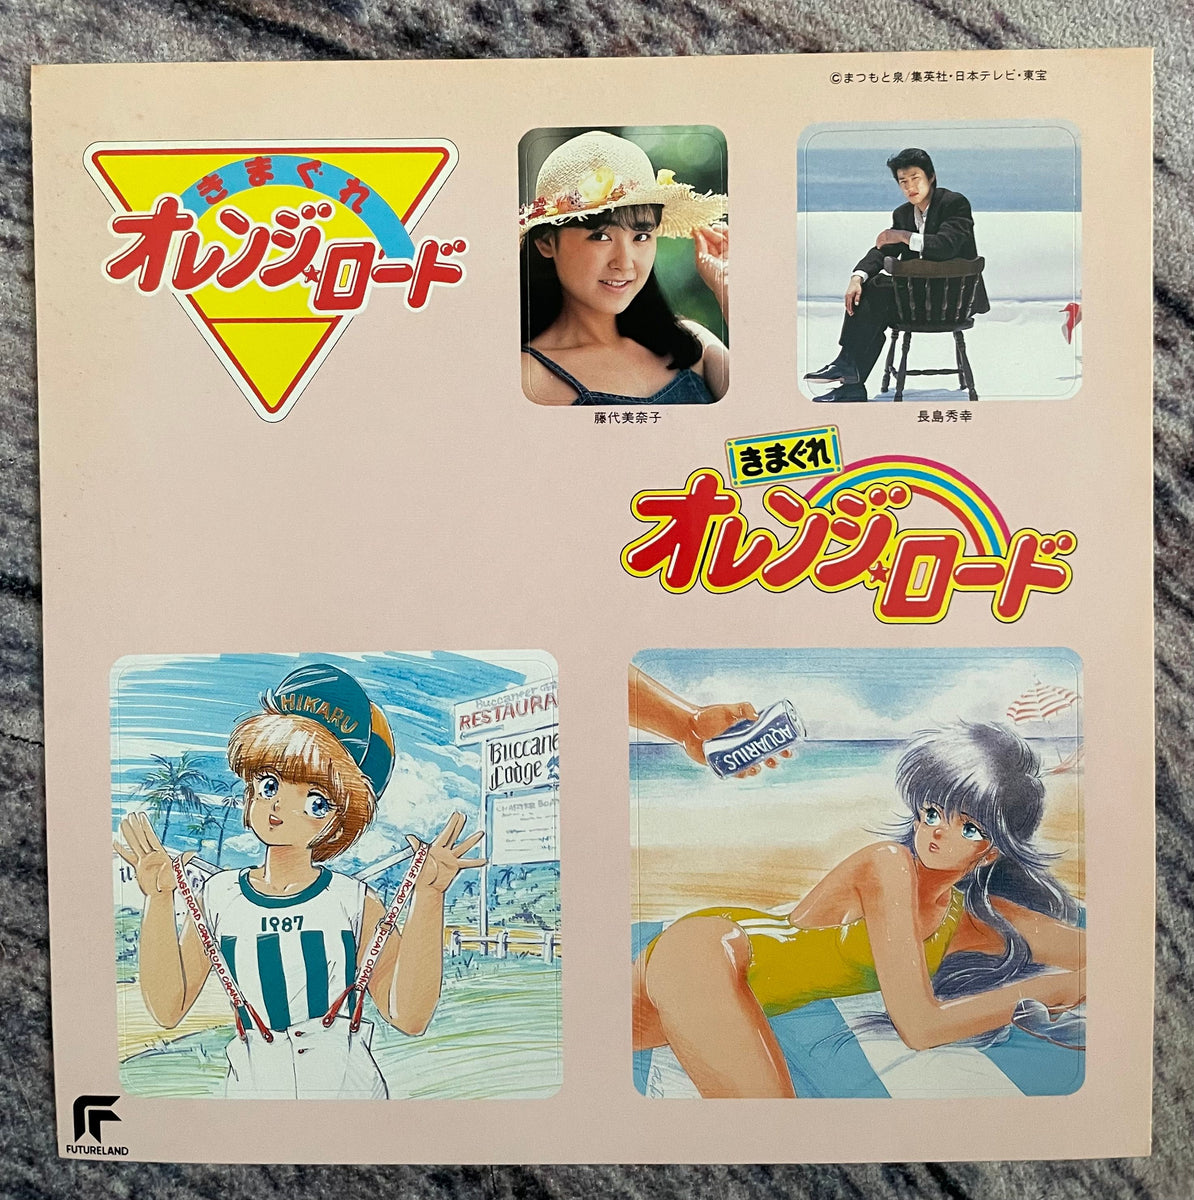 Hideyuki Suzuki u003d 長島秀幸 - オレンジ・ミステリー – Galapagos Records